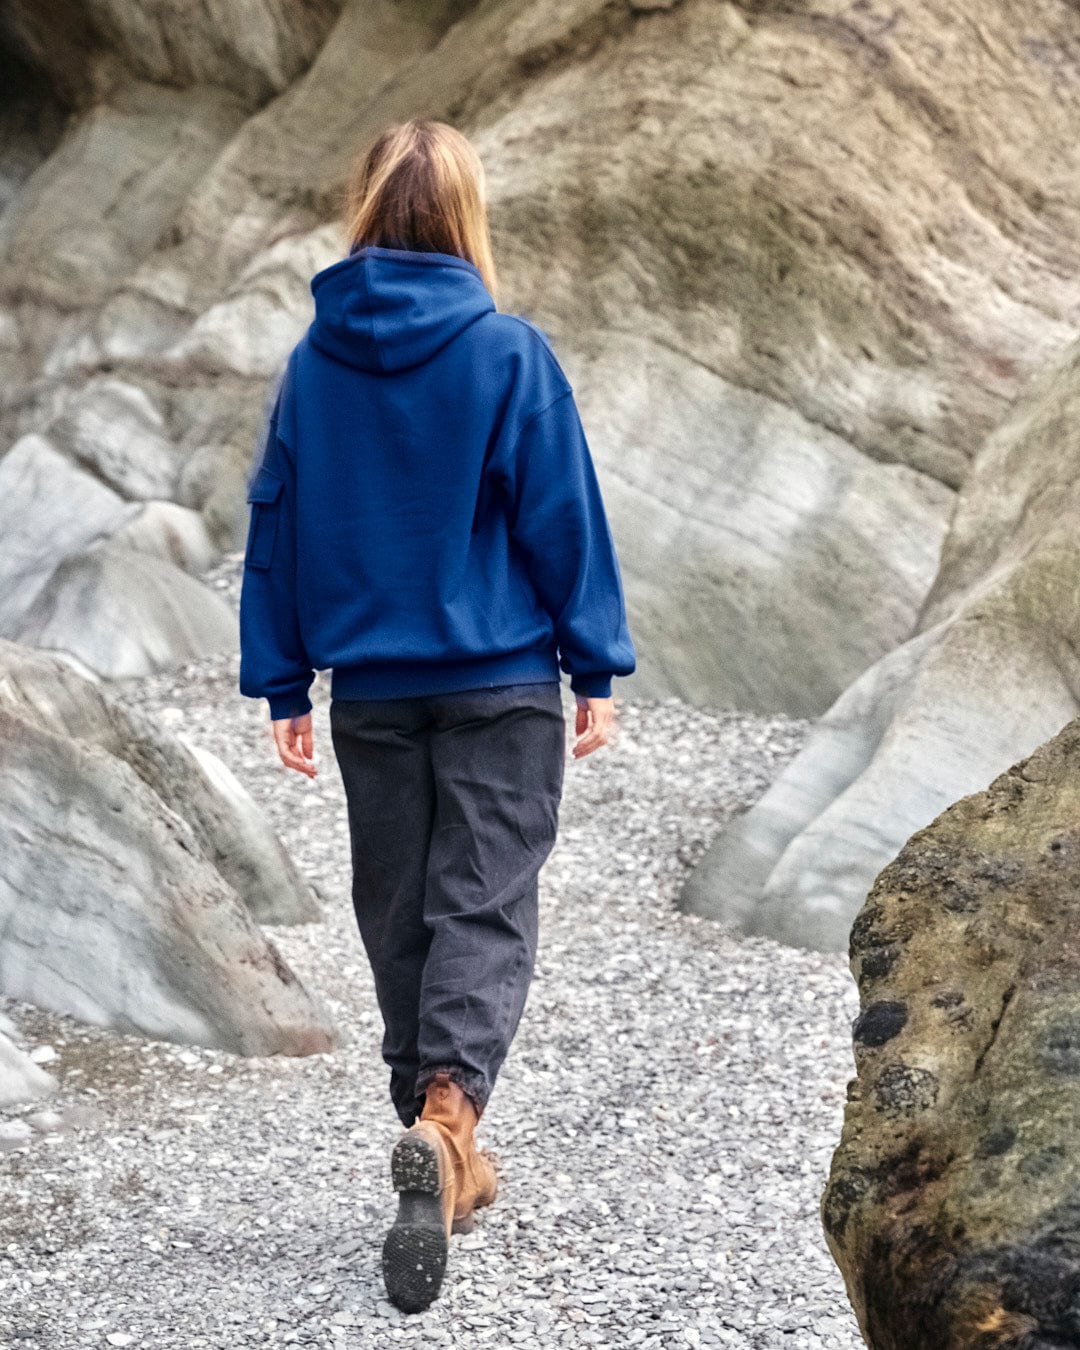 A woman wearing a Celeste - Womens Pop Hoodie - Blue by Saltrock, walking on a rocky path near rocks.